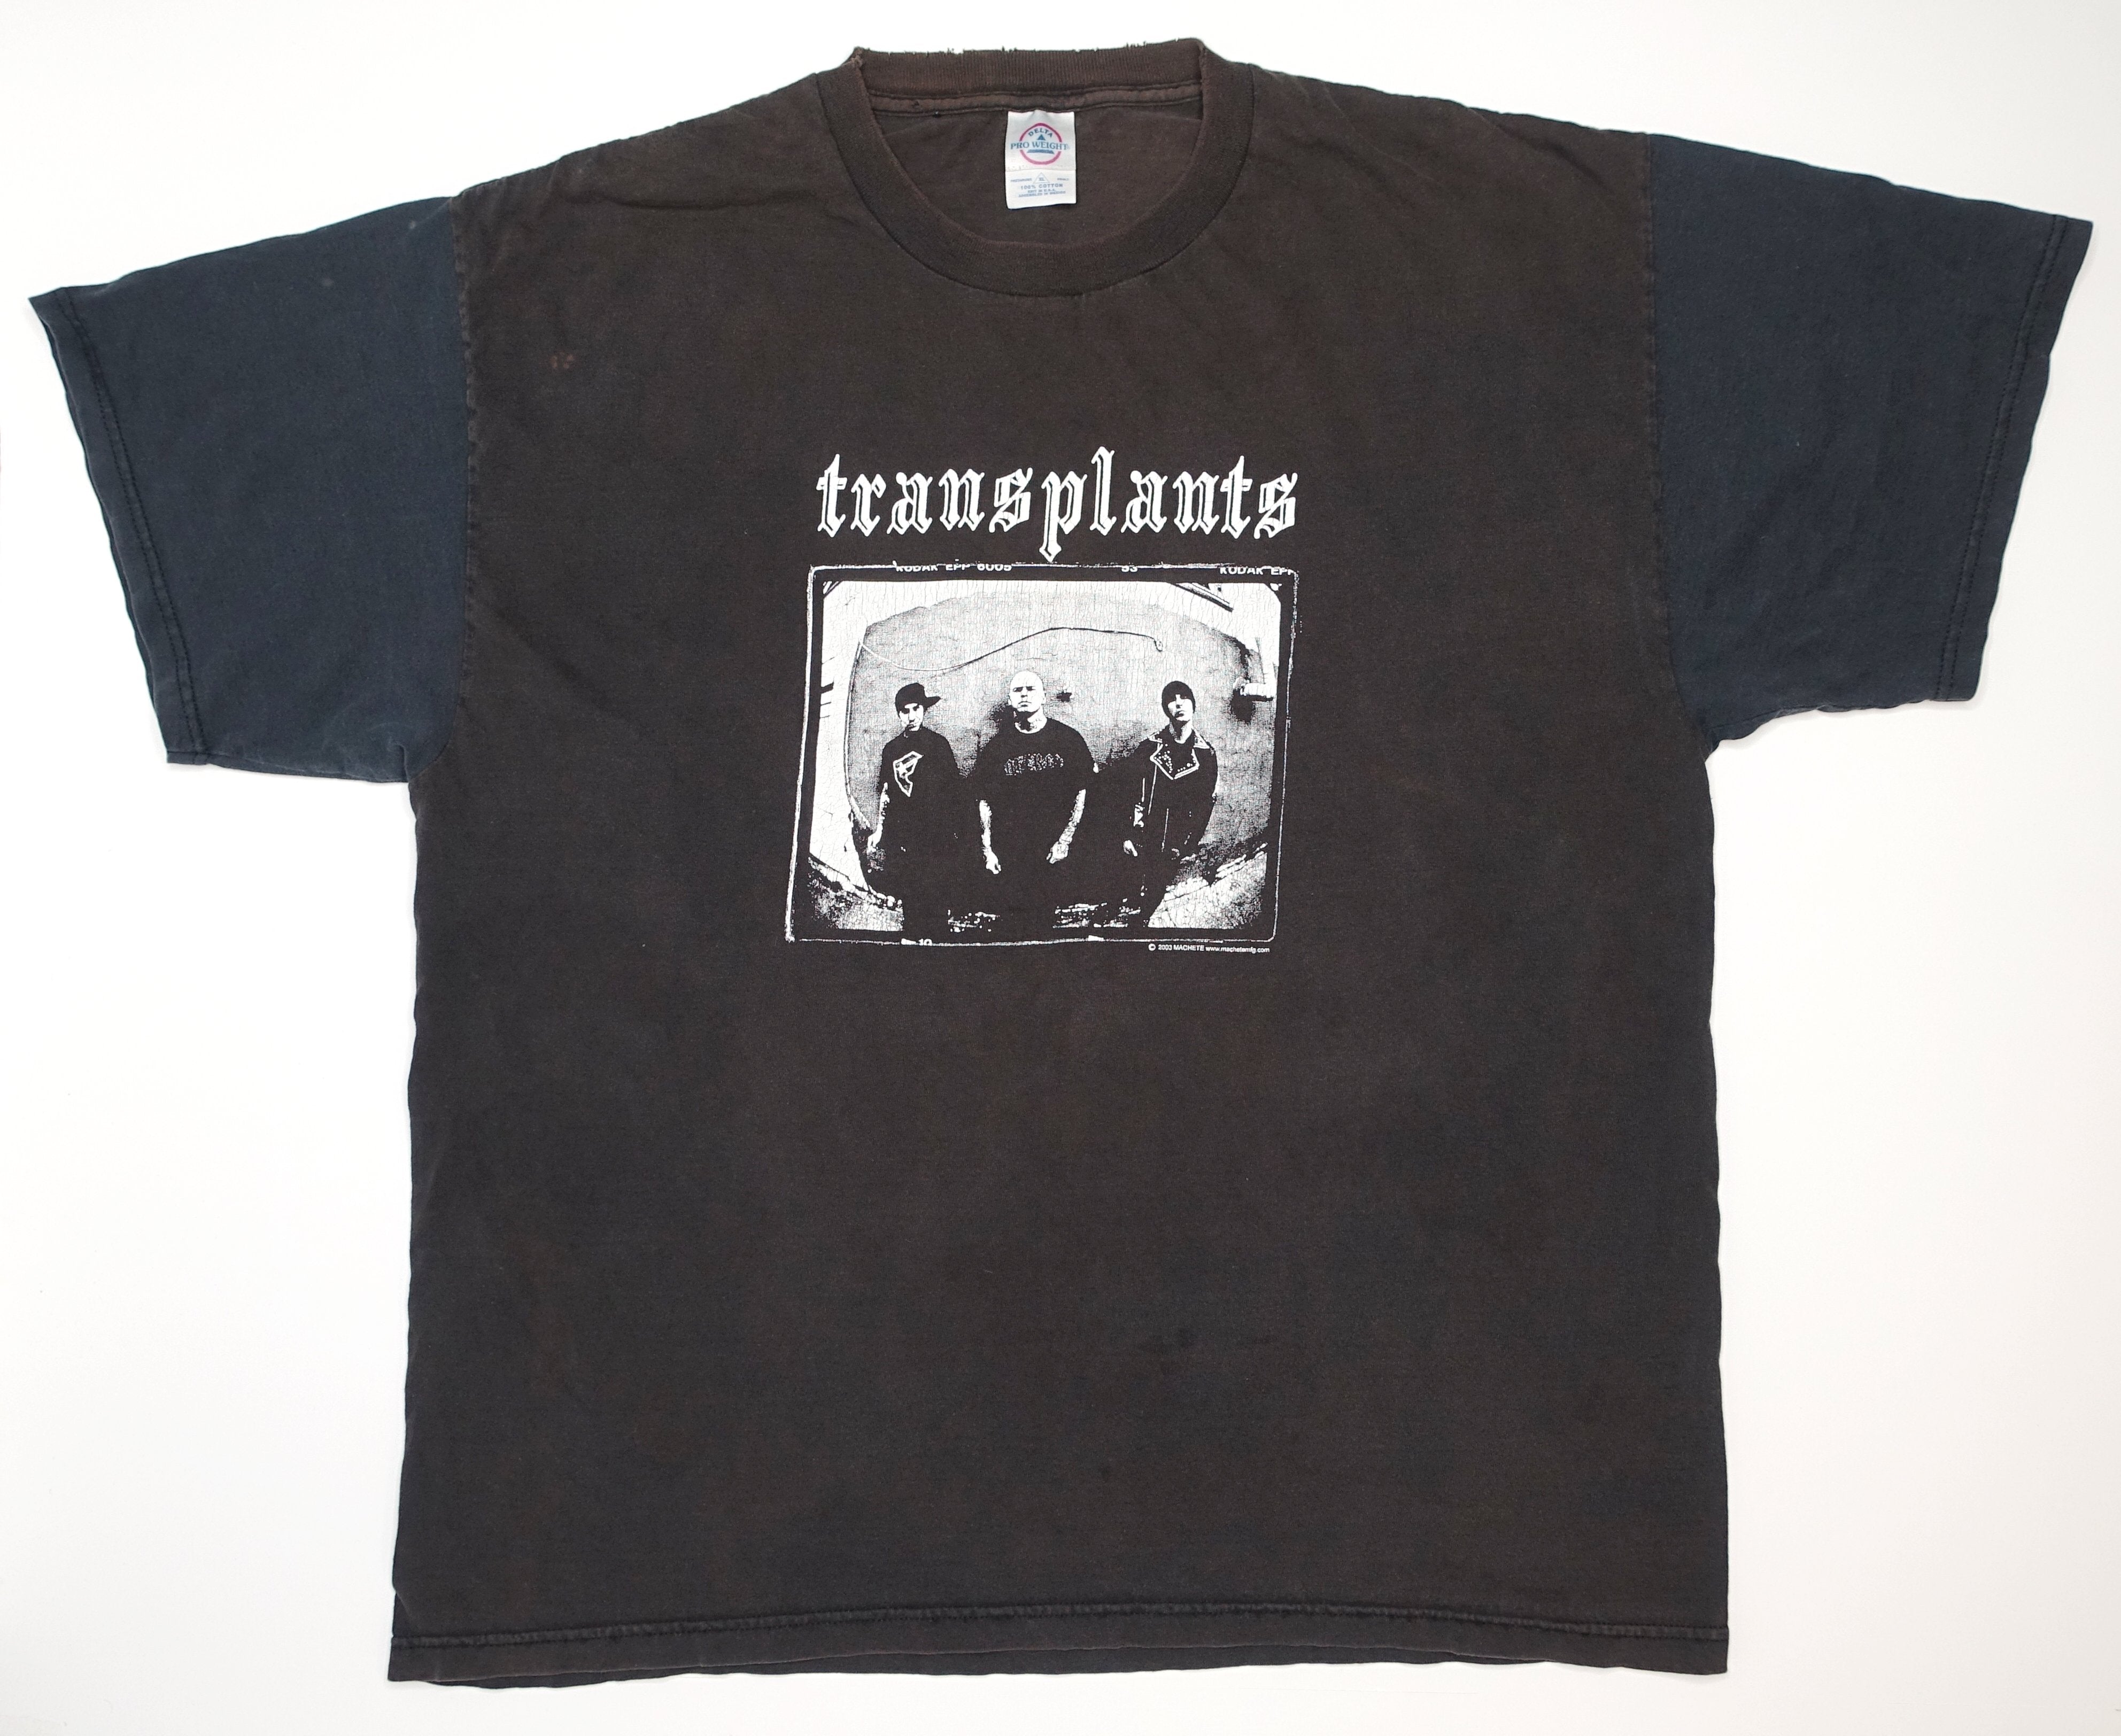 Transplants - Band Photo 2003 Tour Shirt Size XL